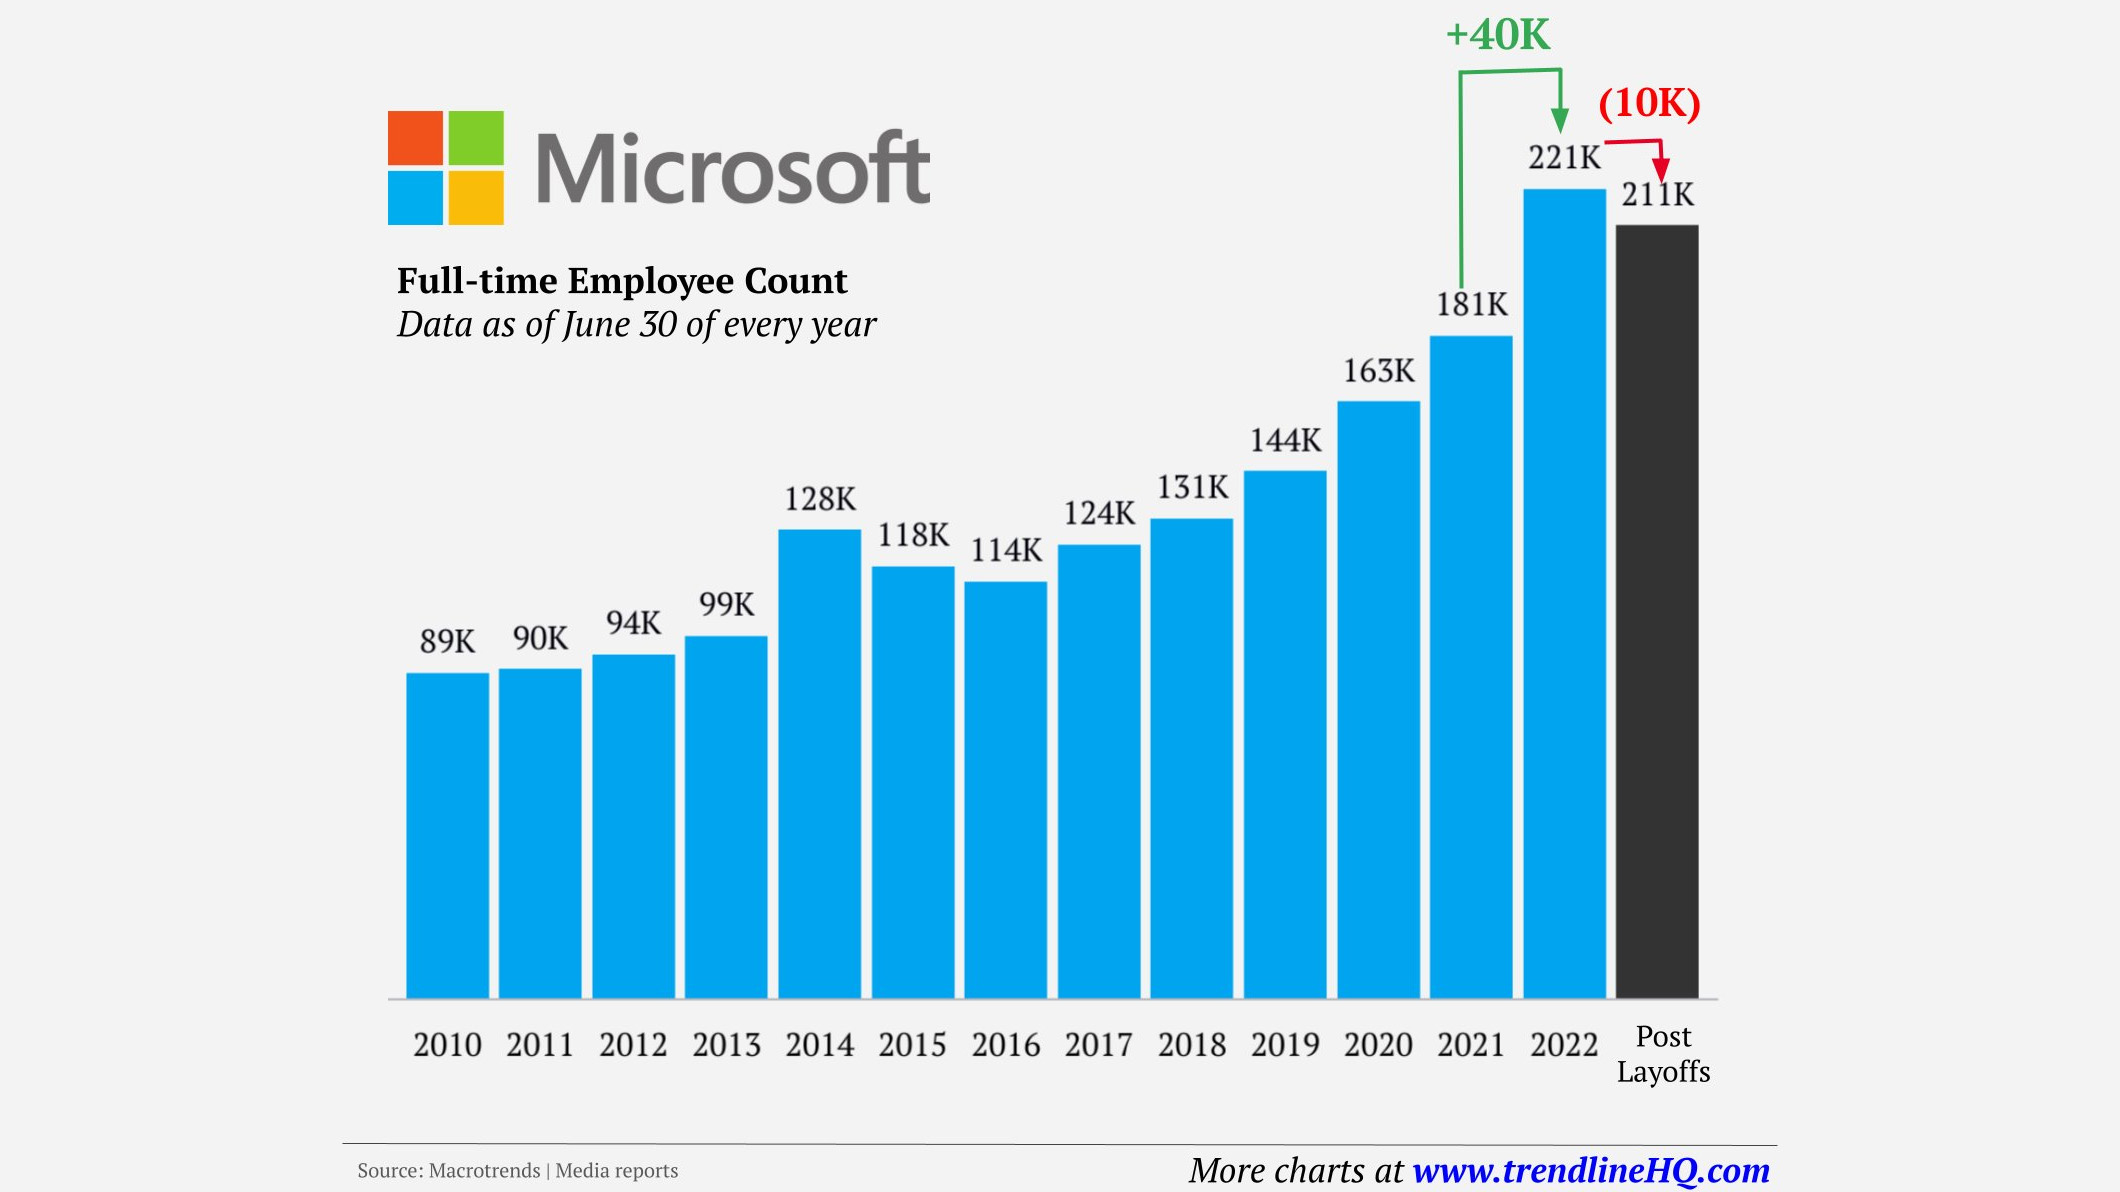 Gráfico que muestra el número de empleados de Microsoft a lo largo del tiempo, que alcanzó su punto máximo el año pasado a 221 000 y ahora ha caído a 211 000 tras un aumento constante impulsado por el impulso de la pandemia.